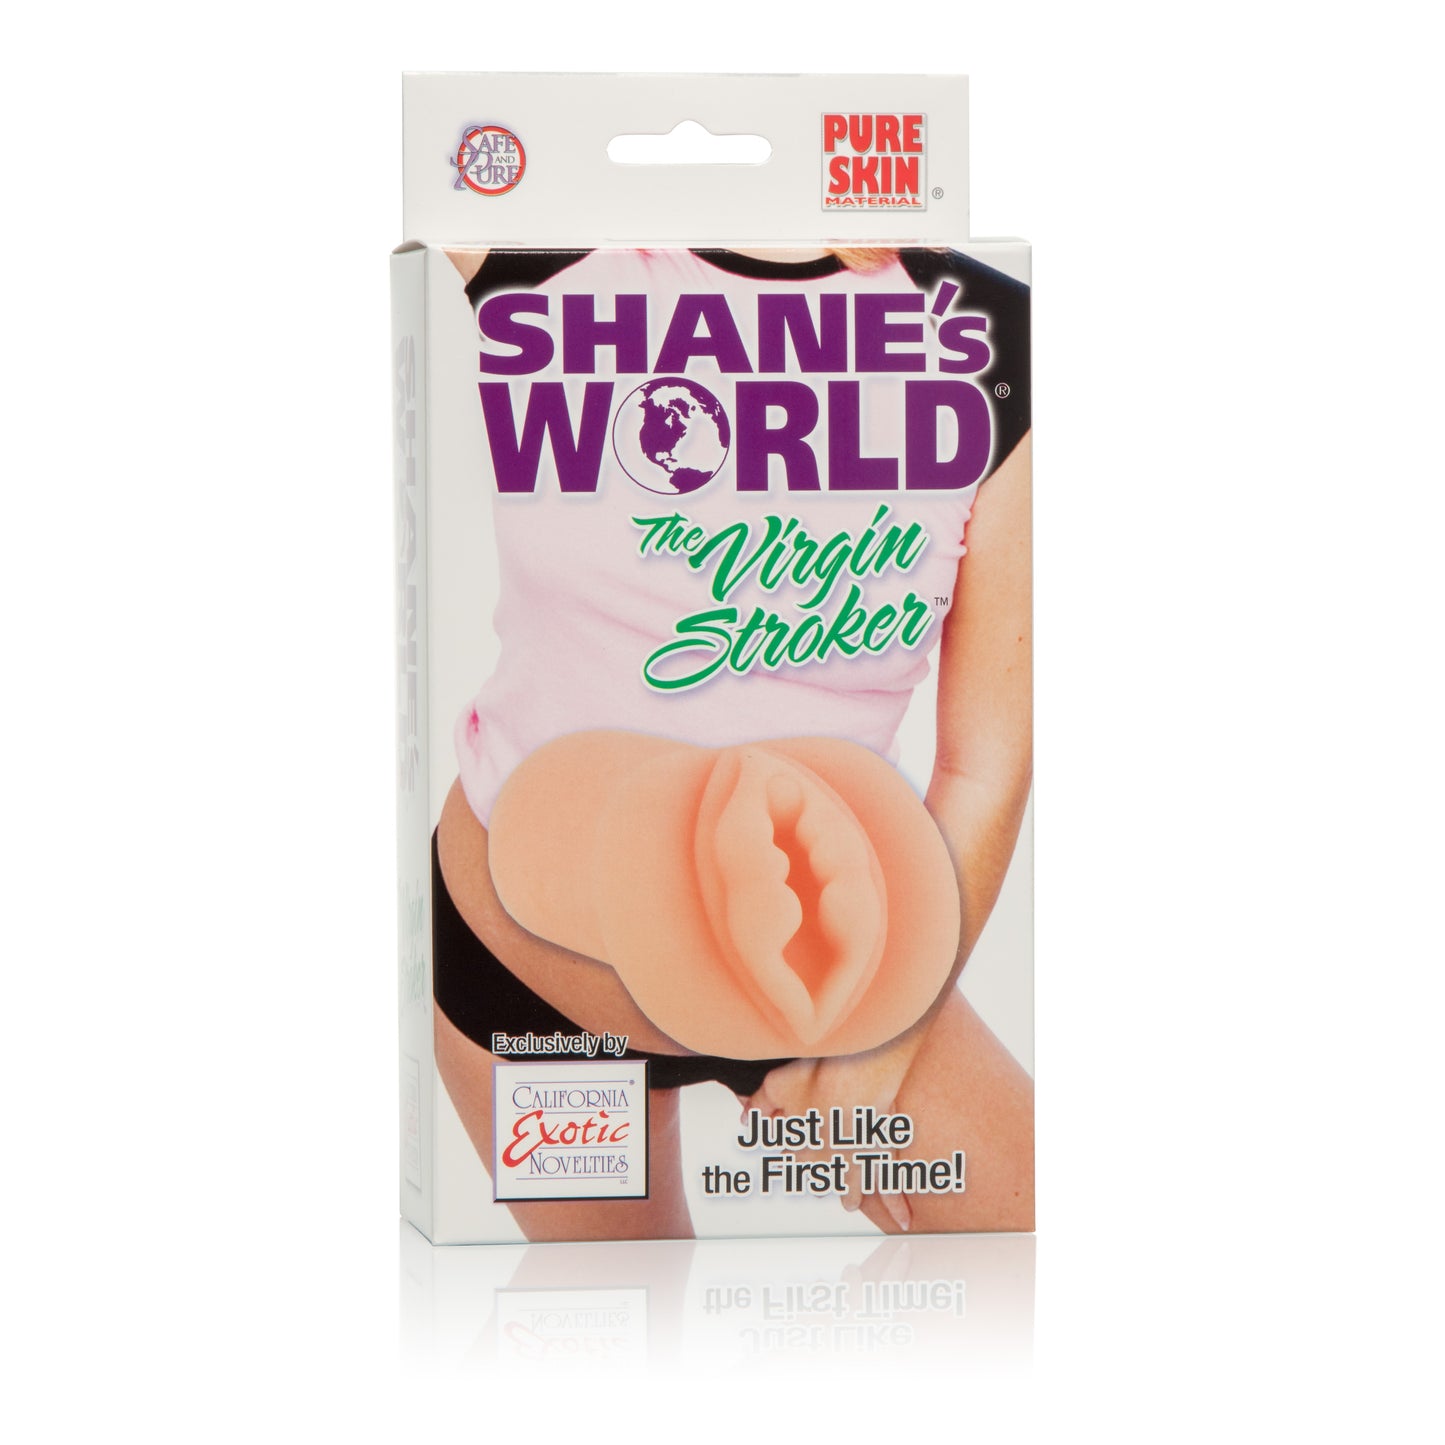 Shanes World the Virgin Stroker